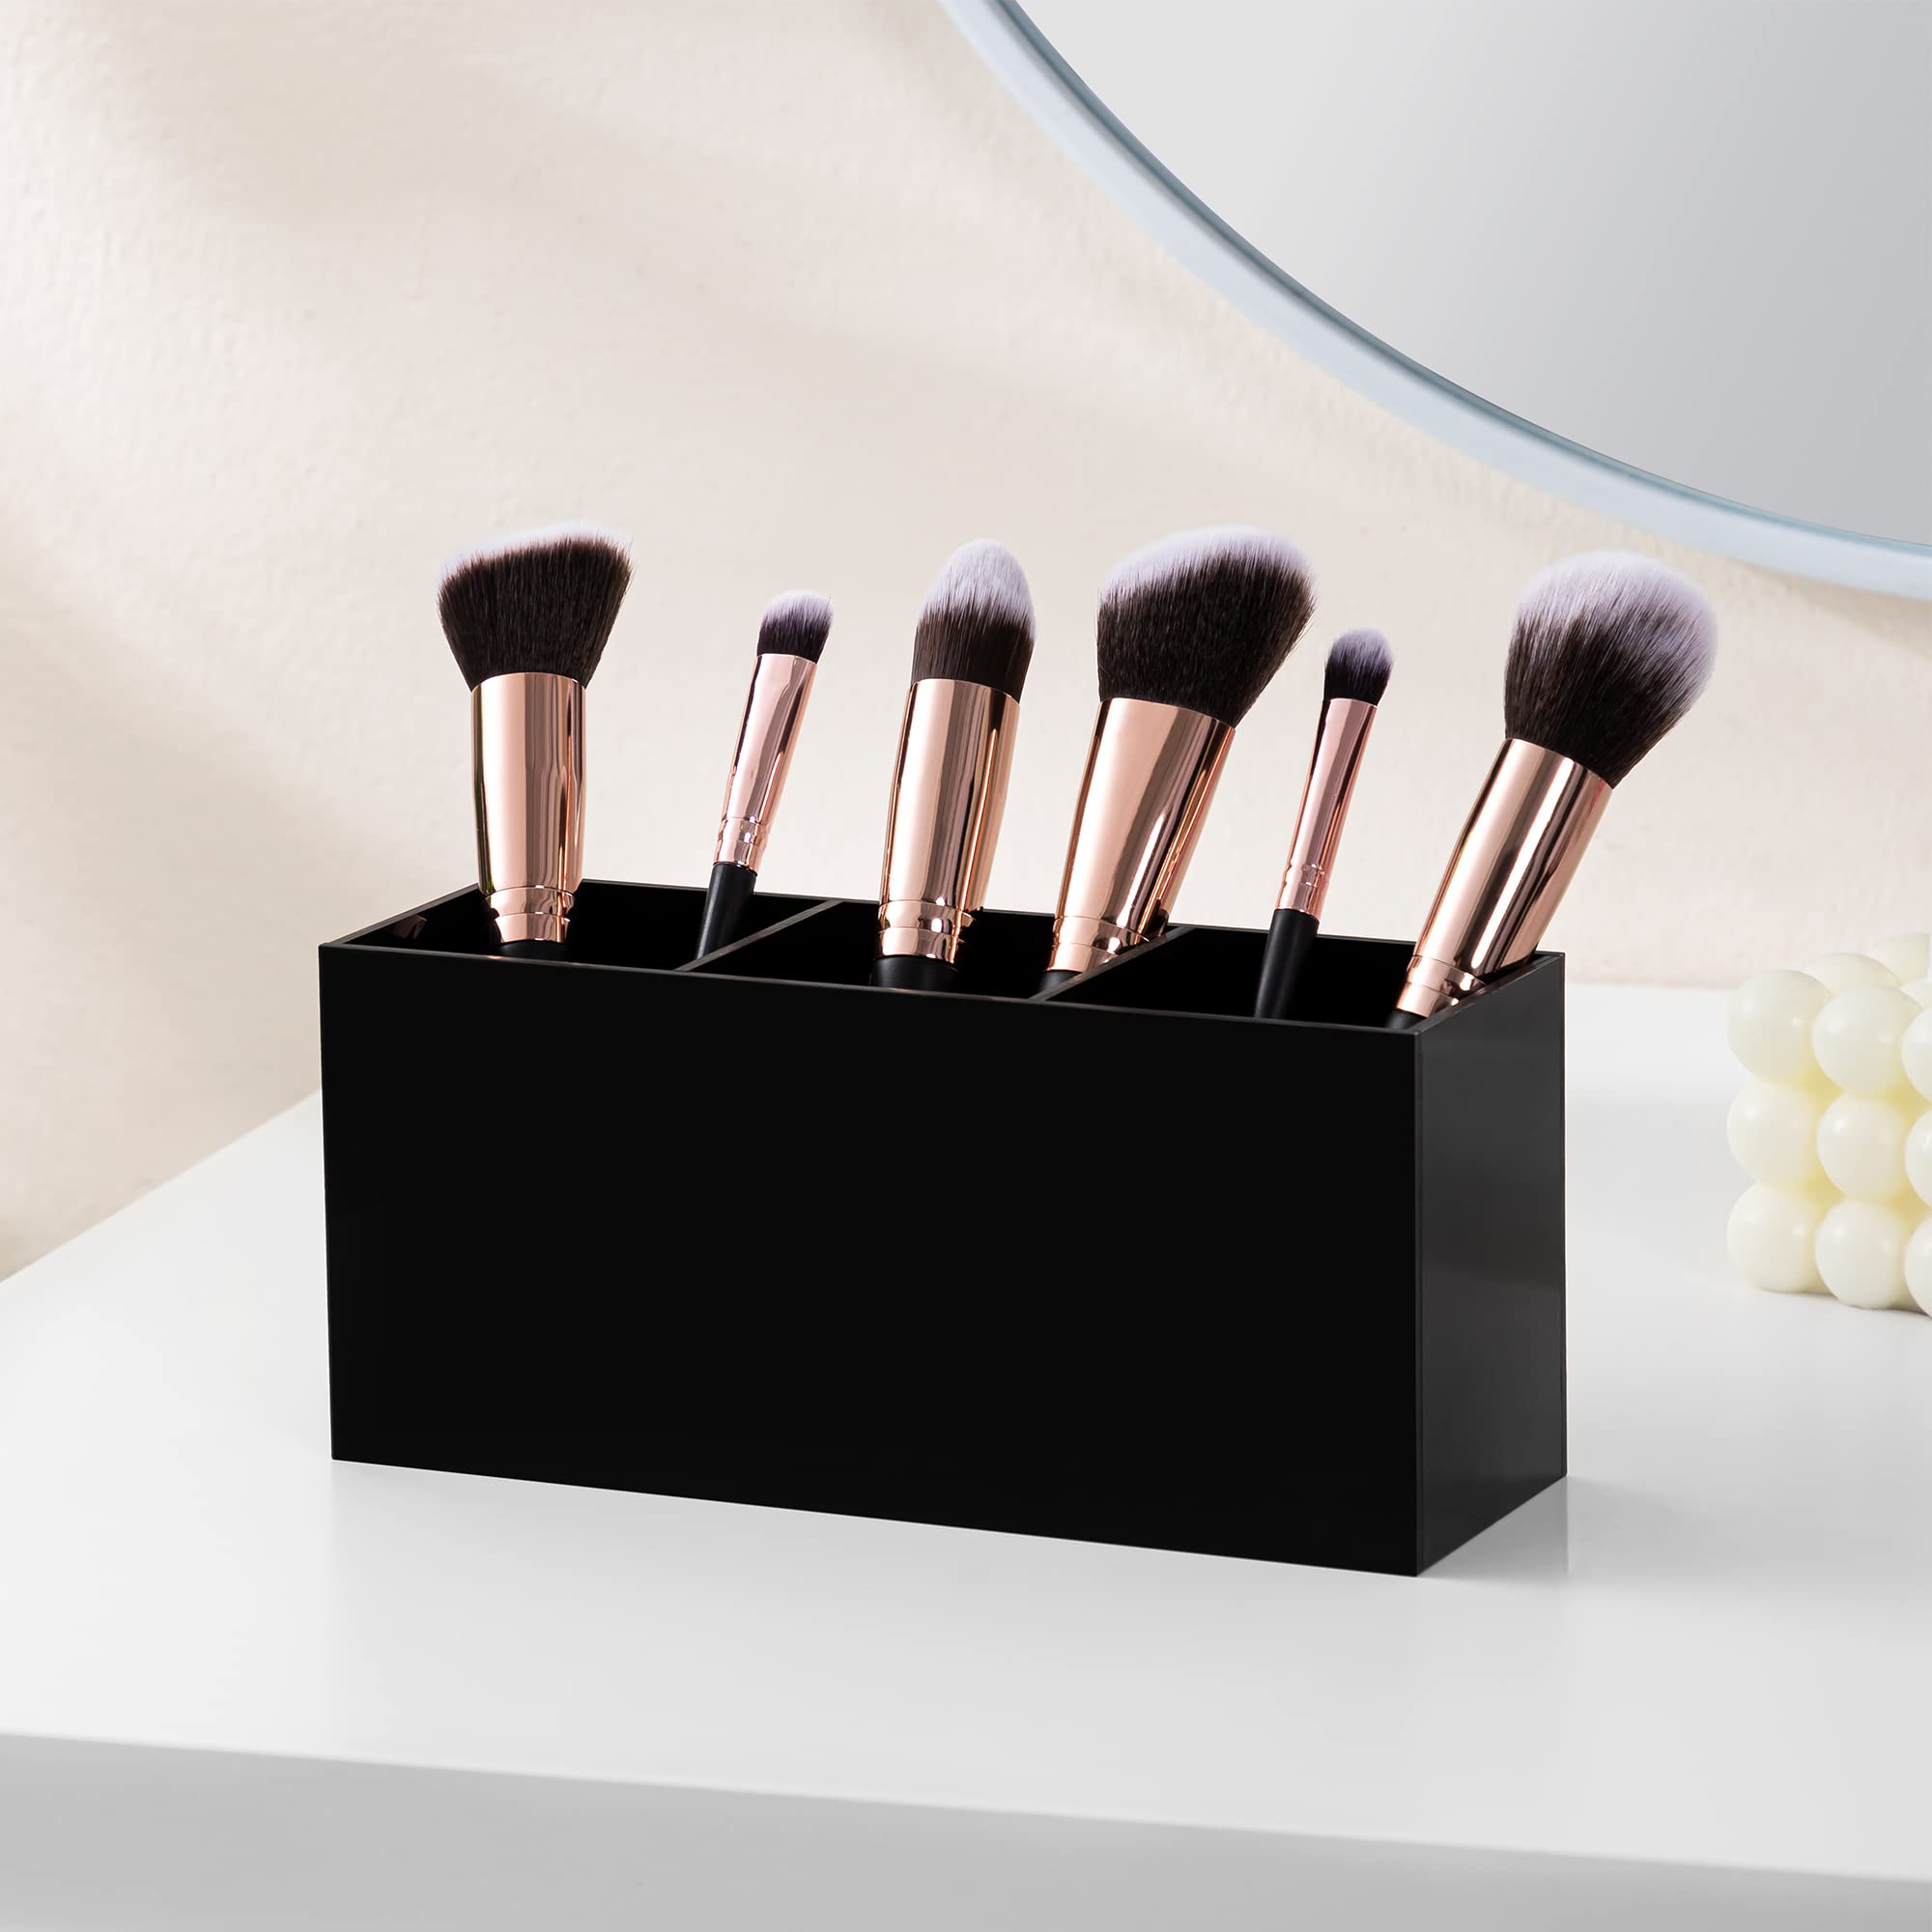 HBlife Makeup Brush Holder Organizer, 3 Slot Acrylic Cosmetics Brushes Storage Solution, Black